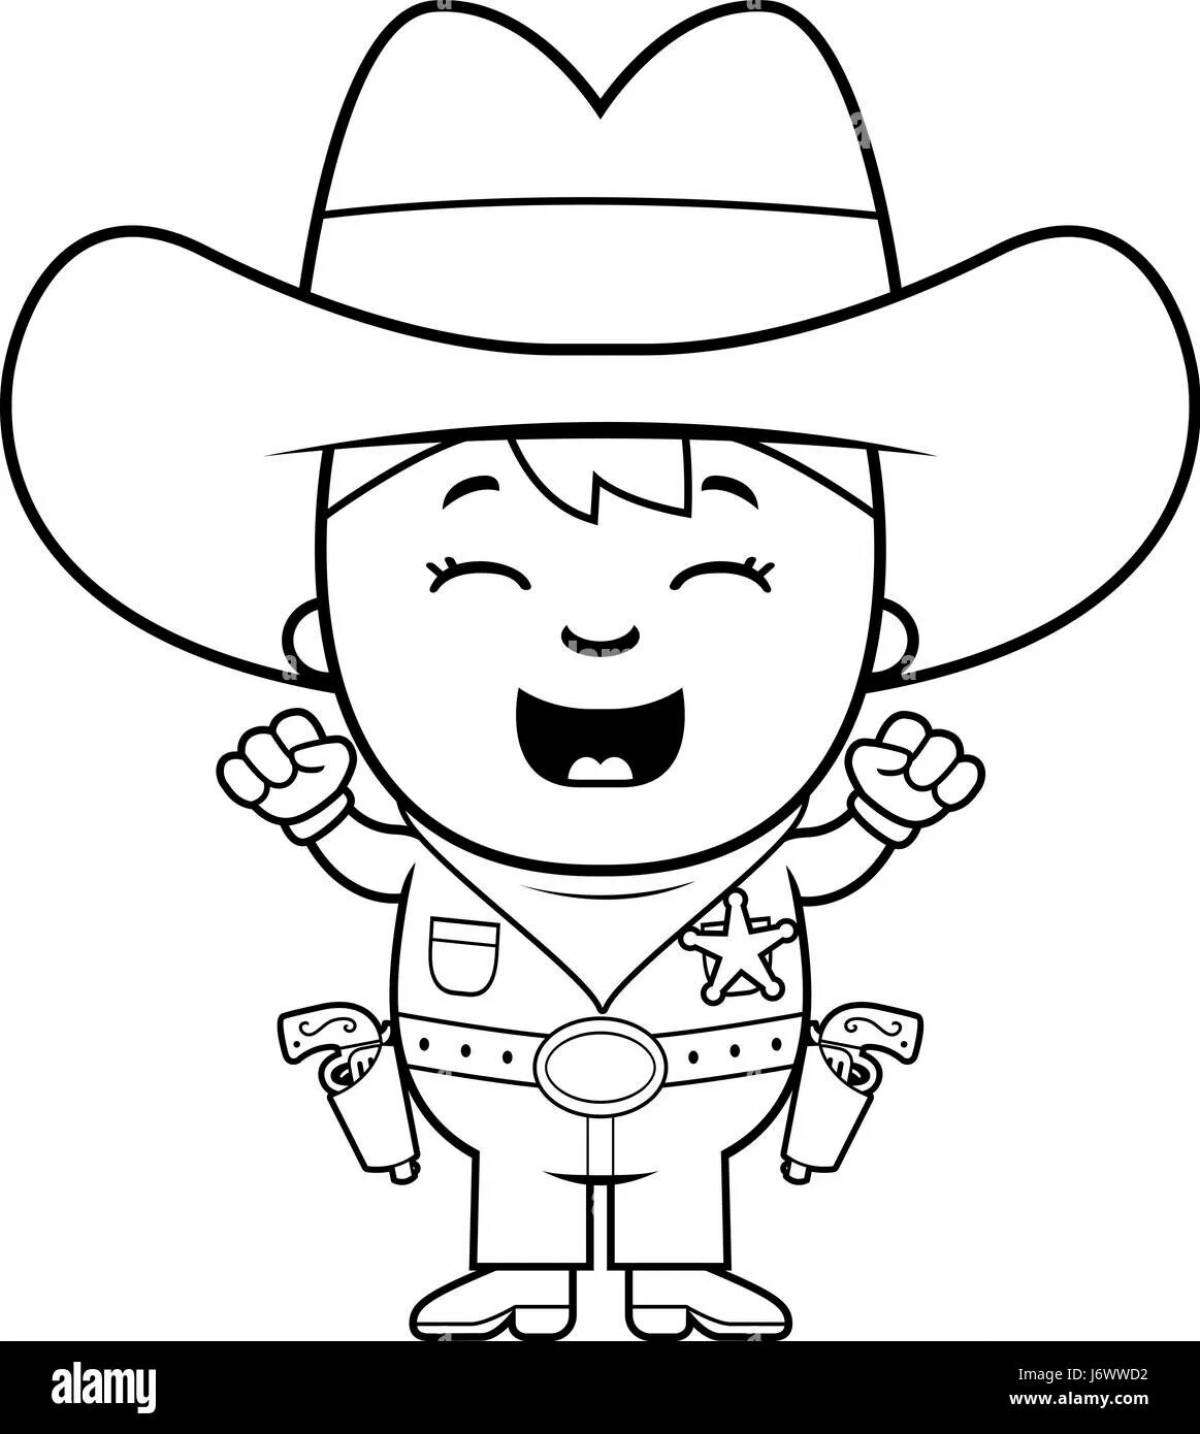 Dashing sheriff coloring page